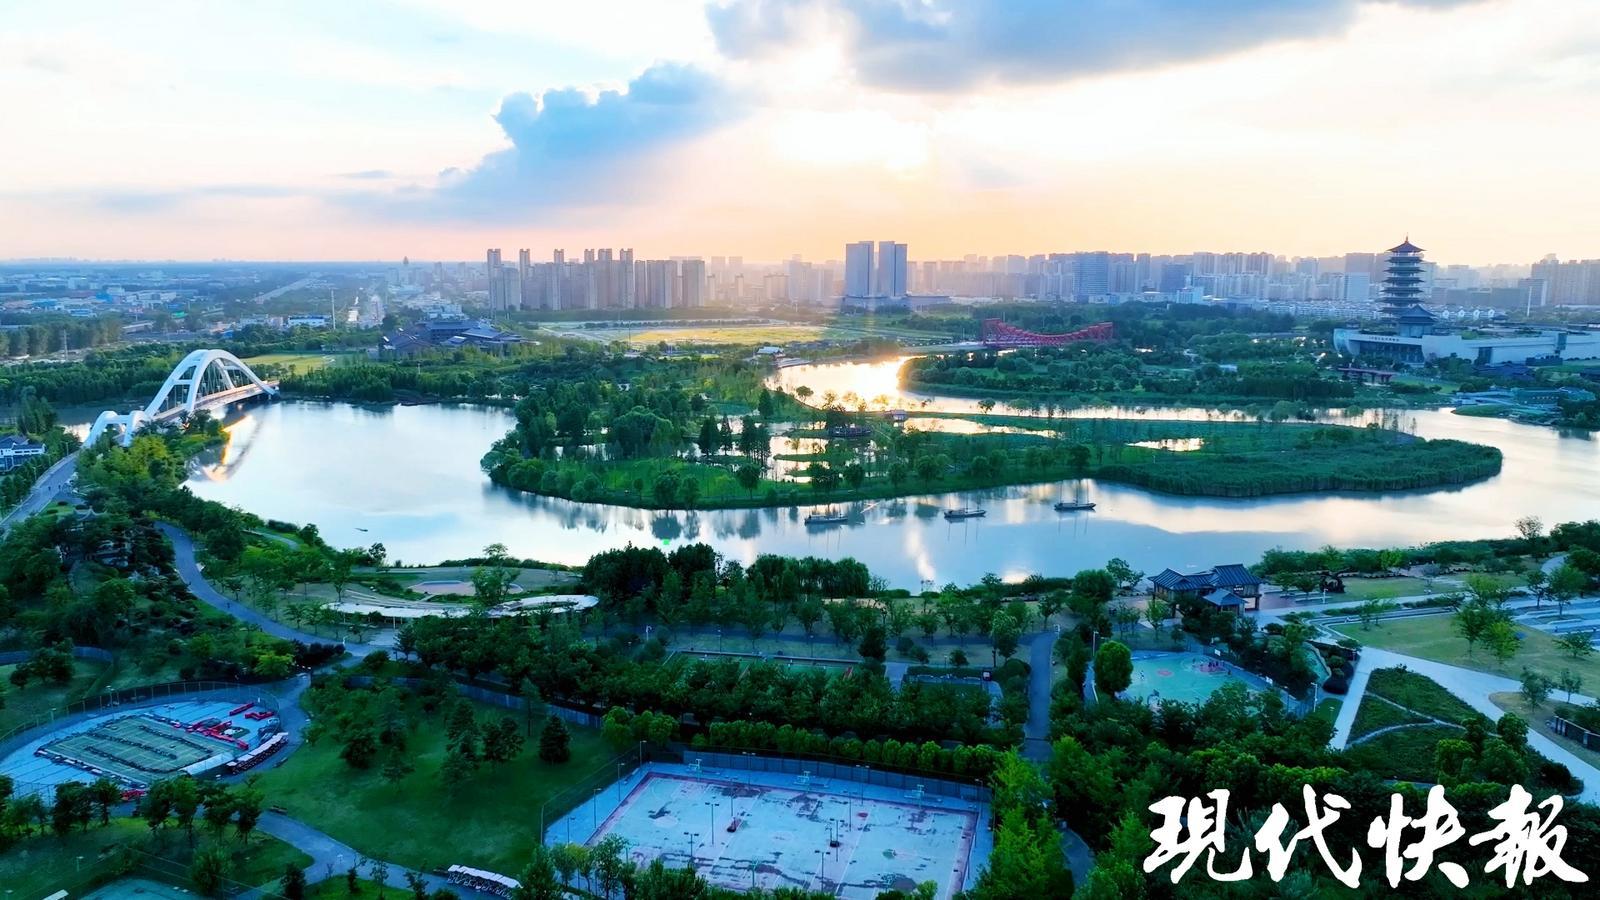 扬州三湾被誉为千年运河“最美曲线”